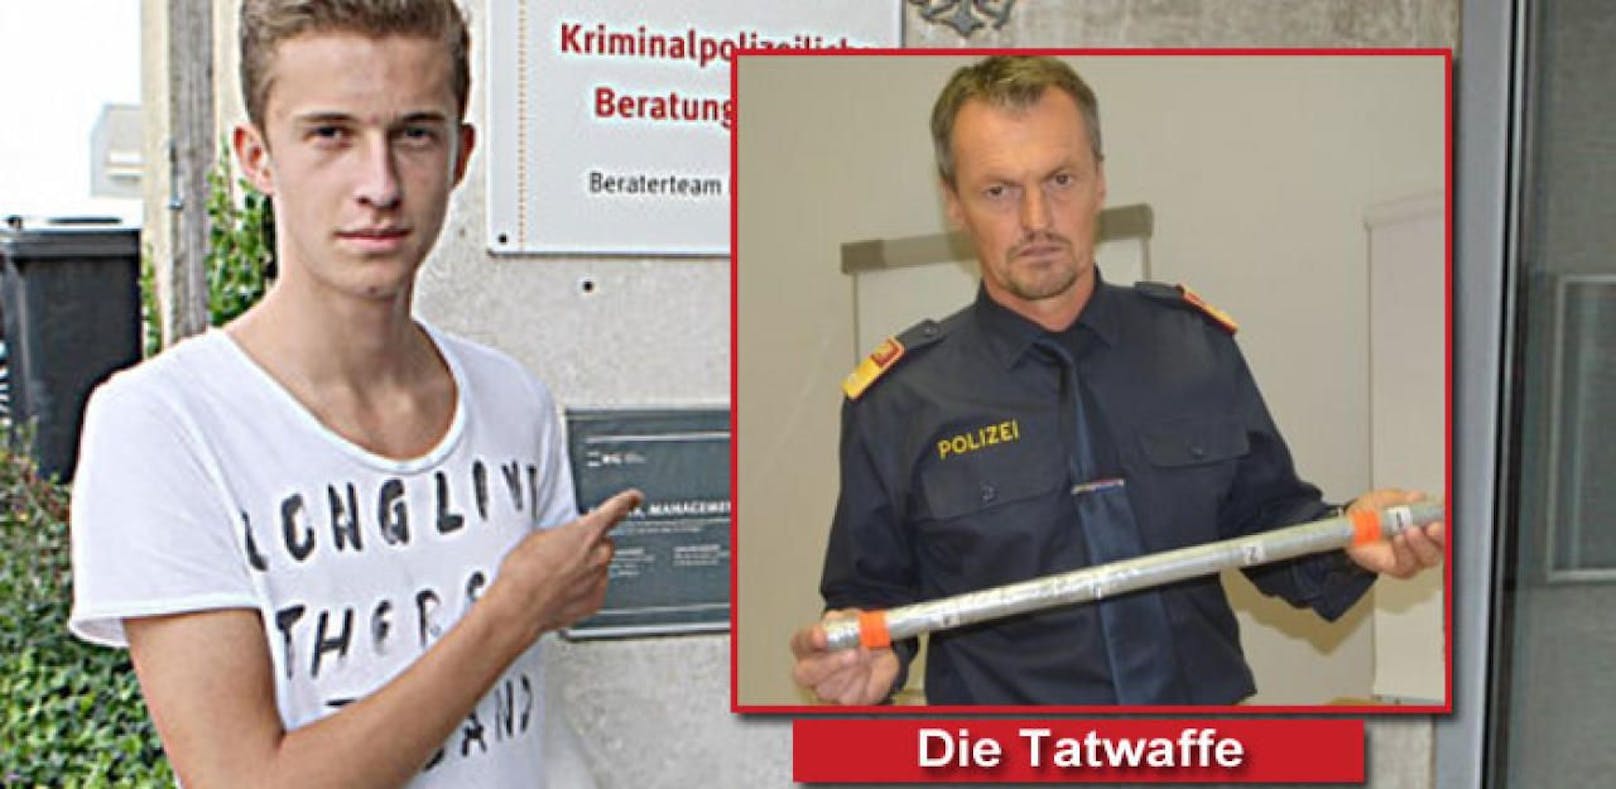 Das Opfer der brutalen Attacke: Daniel C. und rechts die Tatwaffe